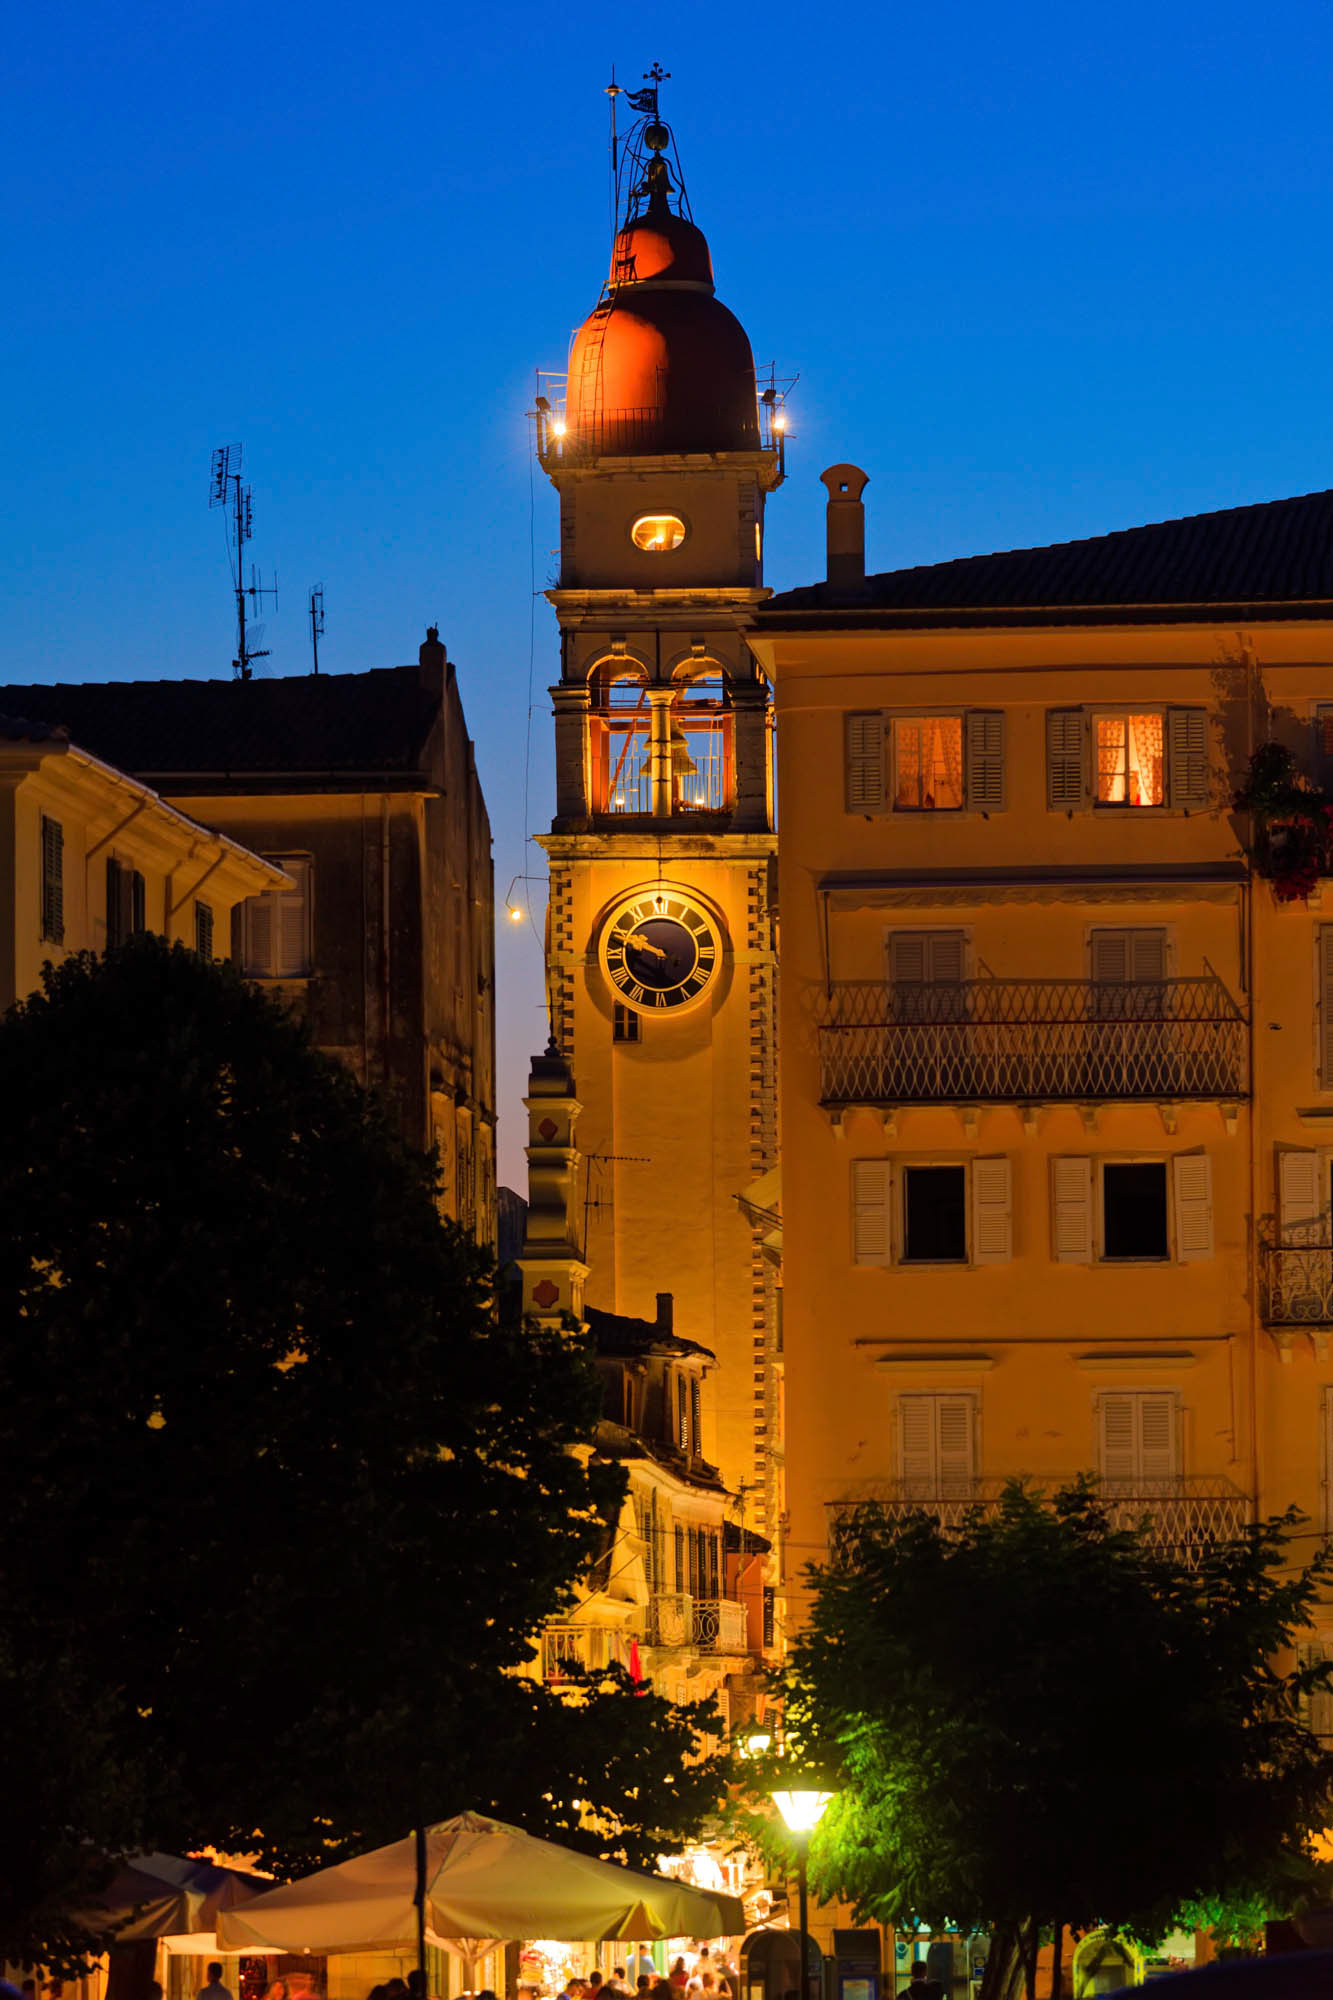 kerkyta, stolica wyspy korfu wieczorem, oświetlona lampami wieża cerkwi, detal